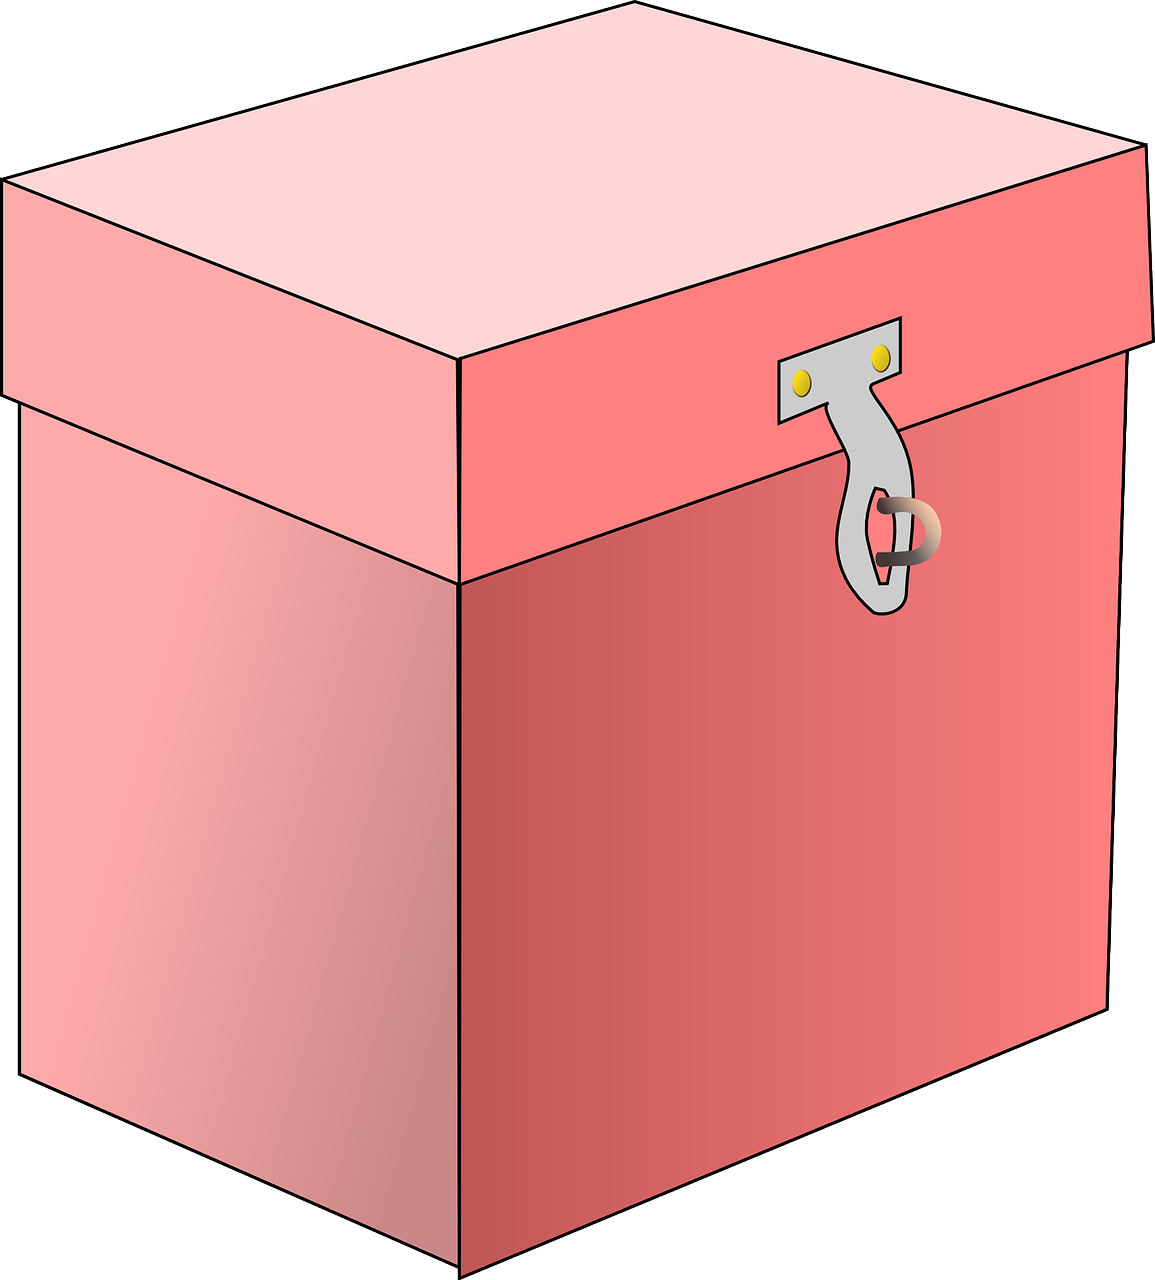 Am art box. Коробка мультяшная. Коробка "рисунок". Коробка на прозрачном фоне. Картонная коробка рисунок.